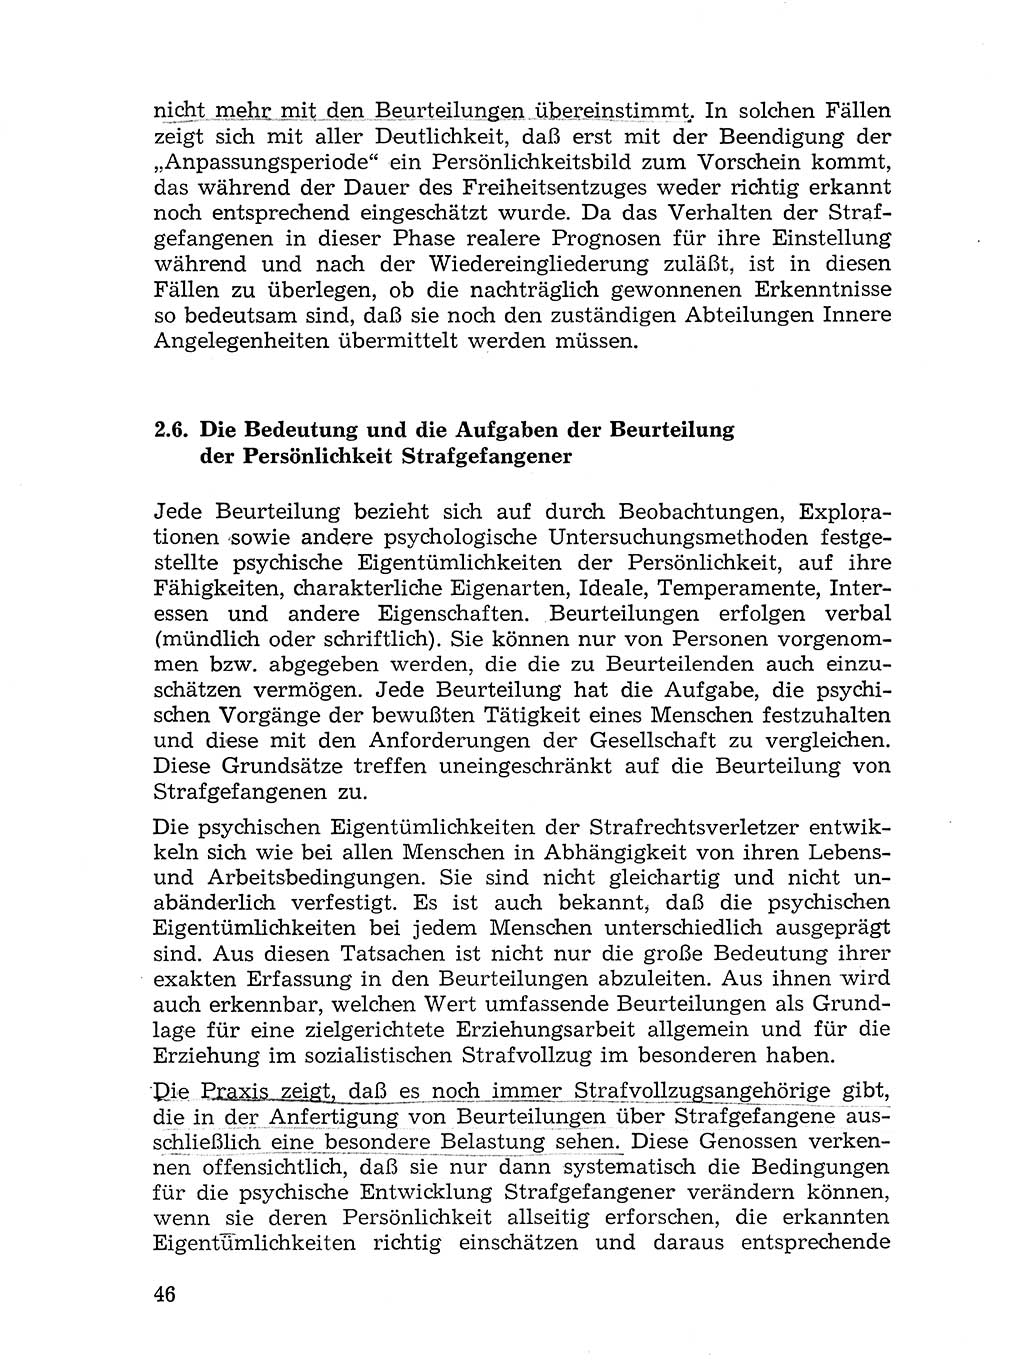 Sozialistischer Strafvollzug (SV) [Deutsche Demokratische Republik (DDR)] 1972, Seite 46 (Soz. SV DDR 1972, S. 46)